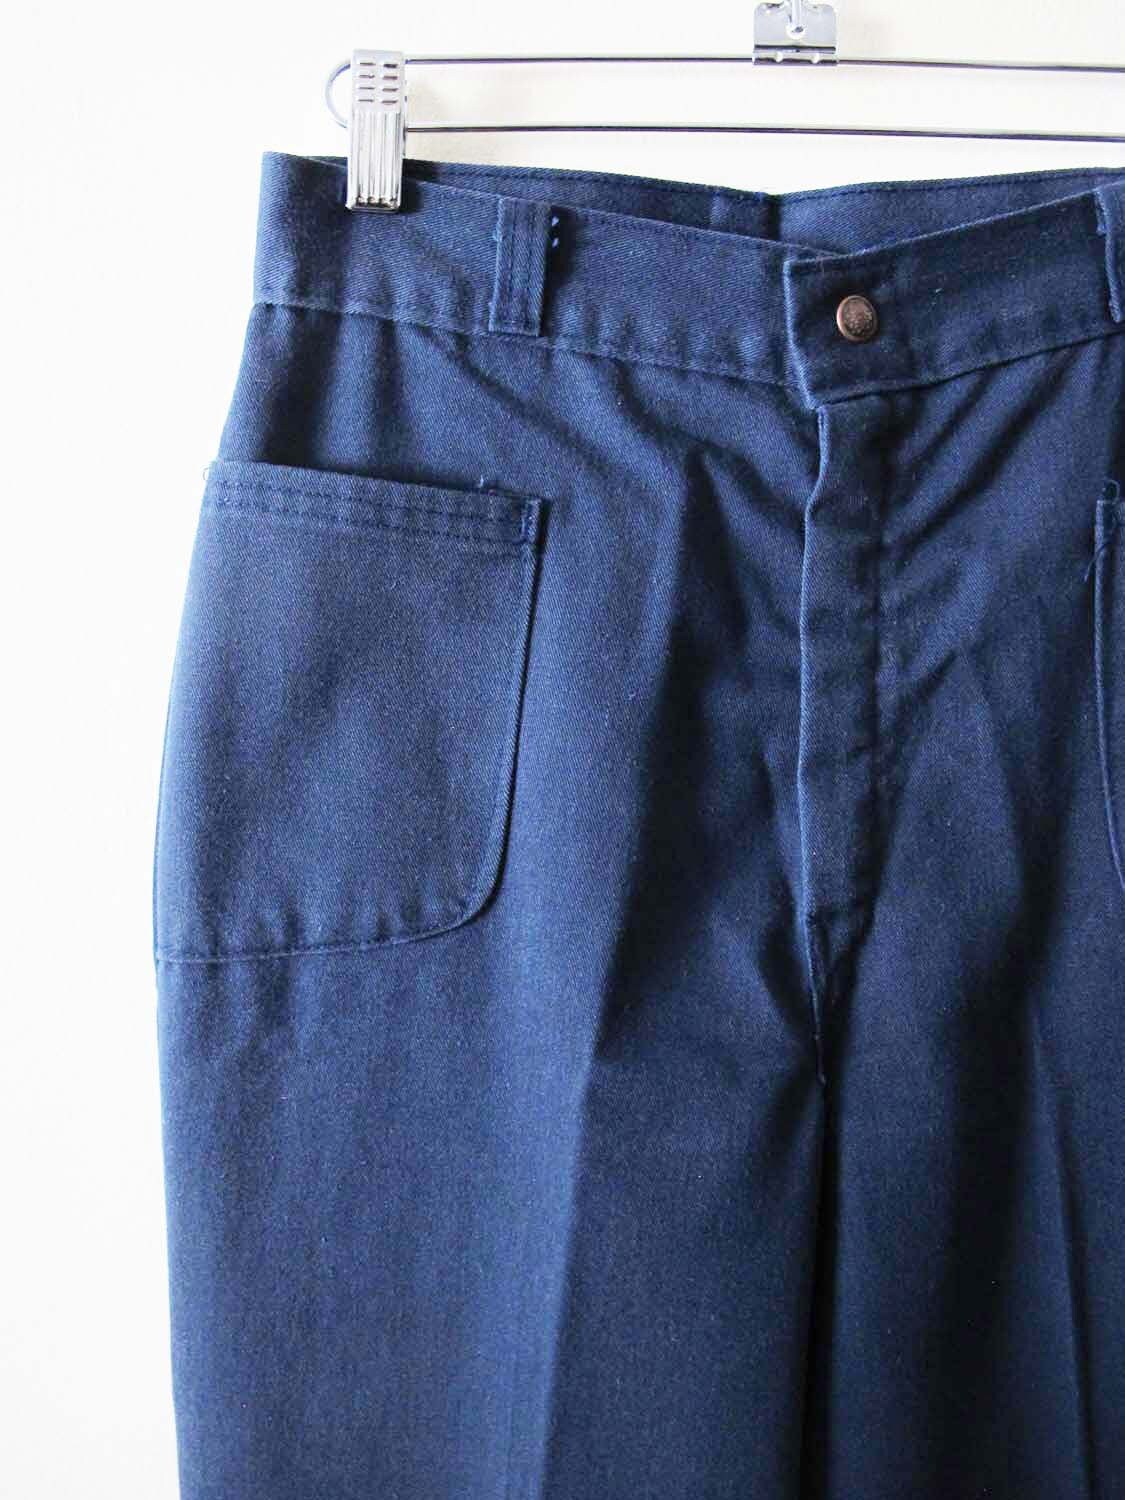 Vintage 70s Sailor Jeans 26 High Waist Wide Leg 1970s Cotton - Etsy